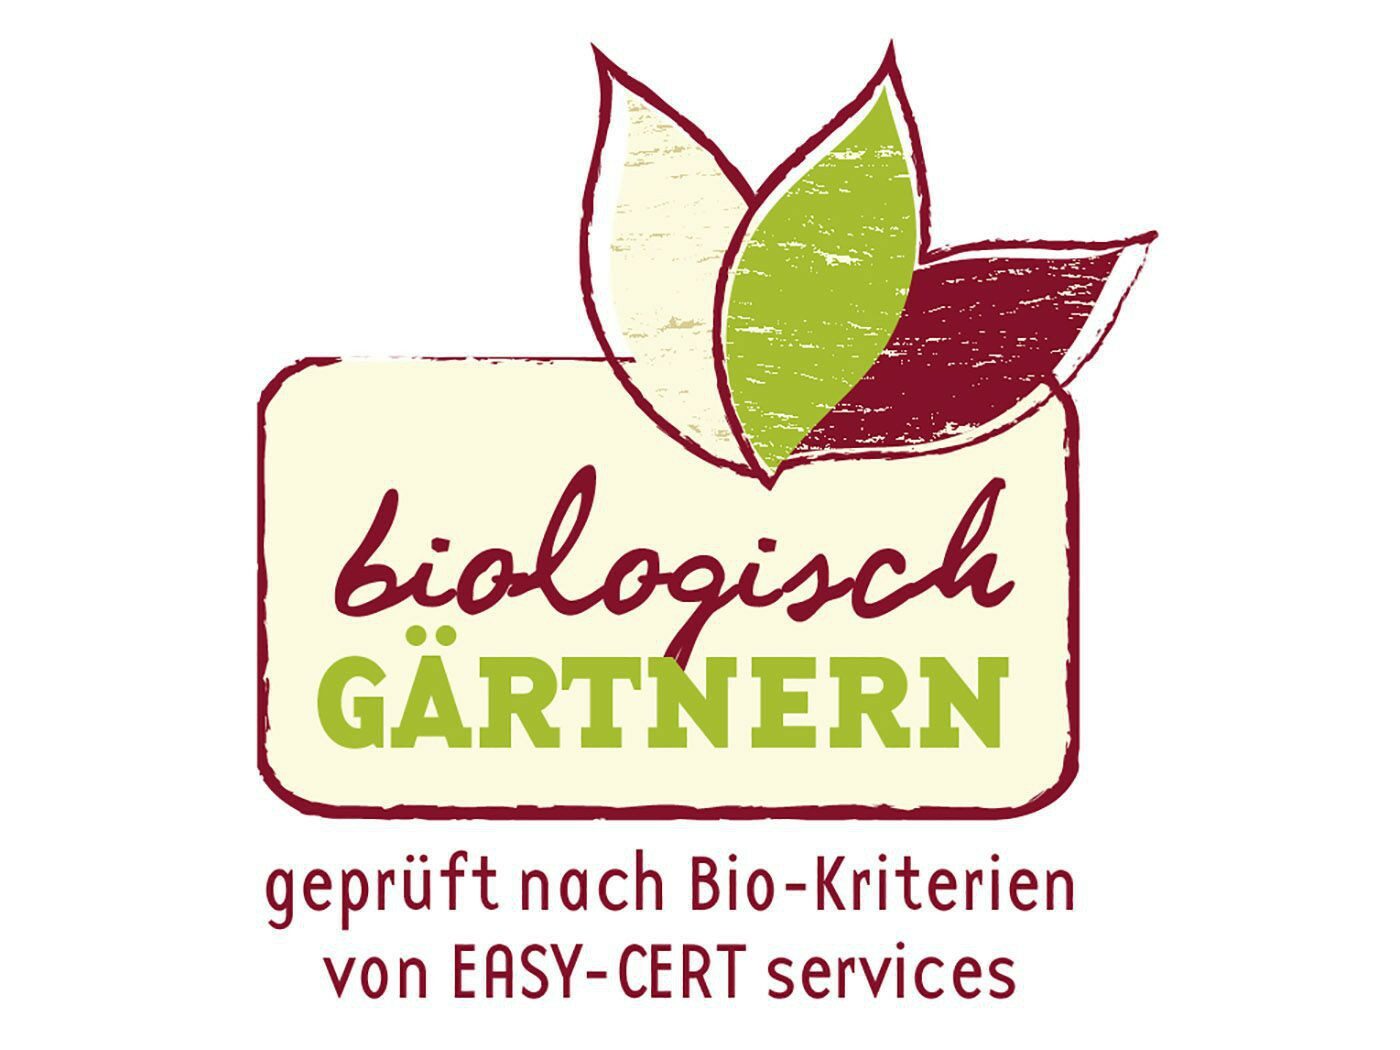 Biologisch Gärtnern - geprüfte Bio-Kriterien